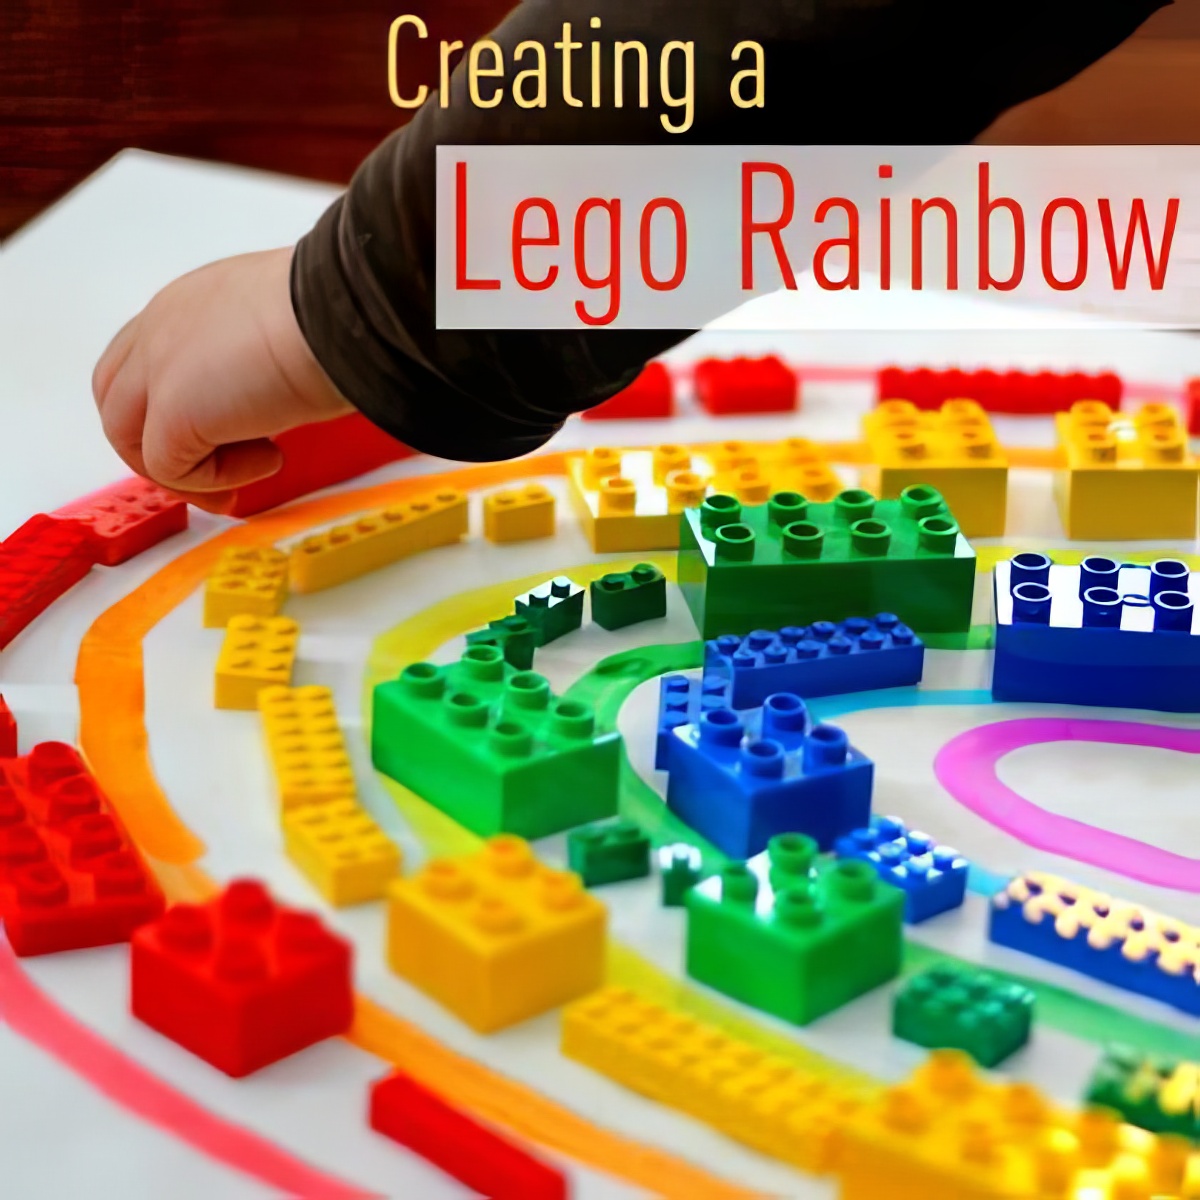 LEGO Rainbow, creative colorful LEGO Rainbow